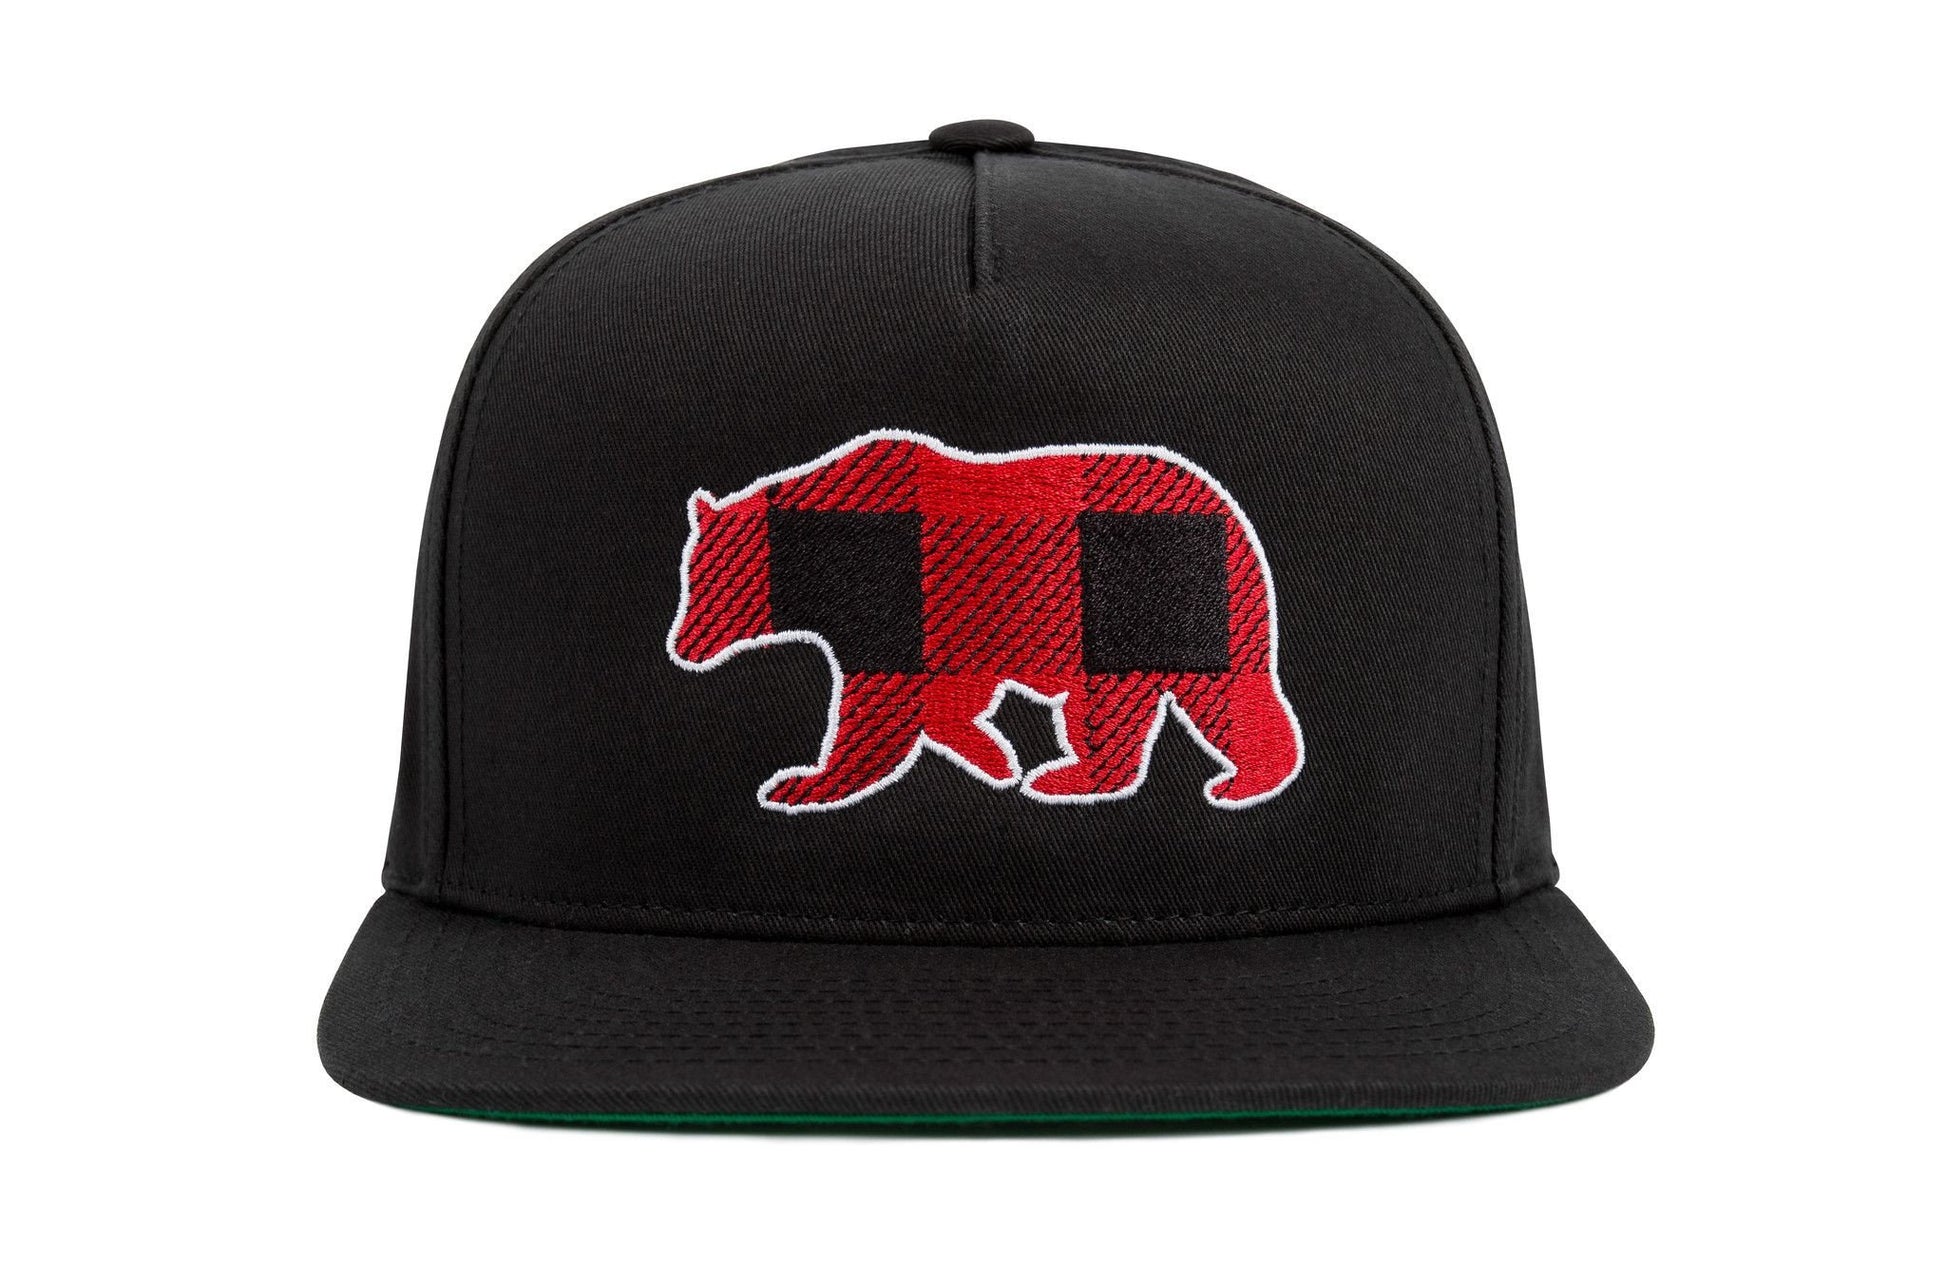 Plaid Bear (Baseball Cap)-Headwear-Swish Embassy